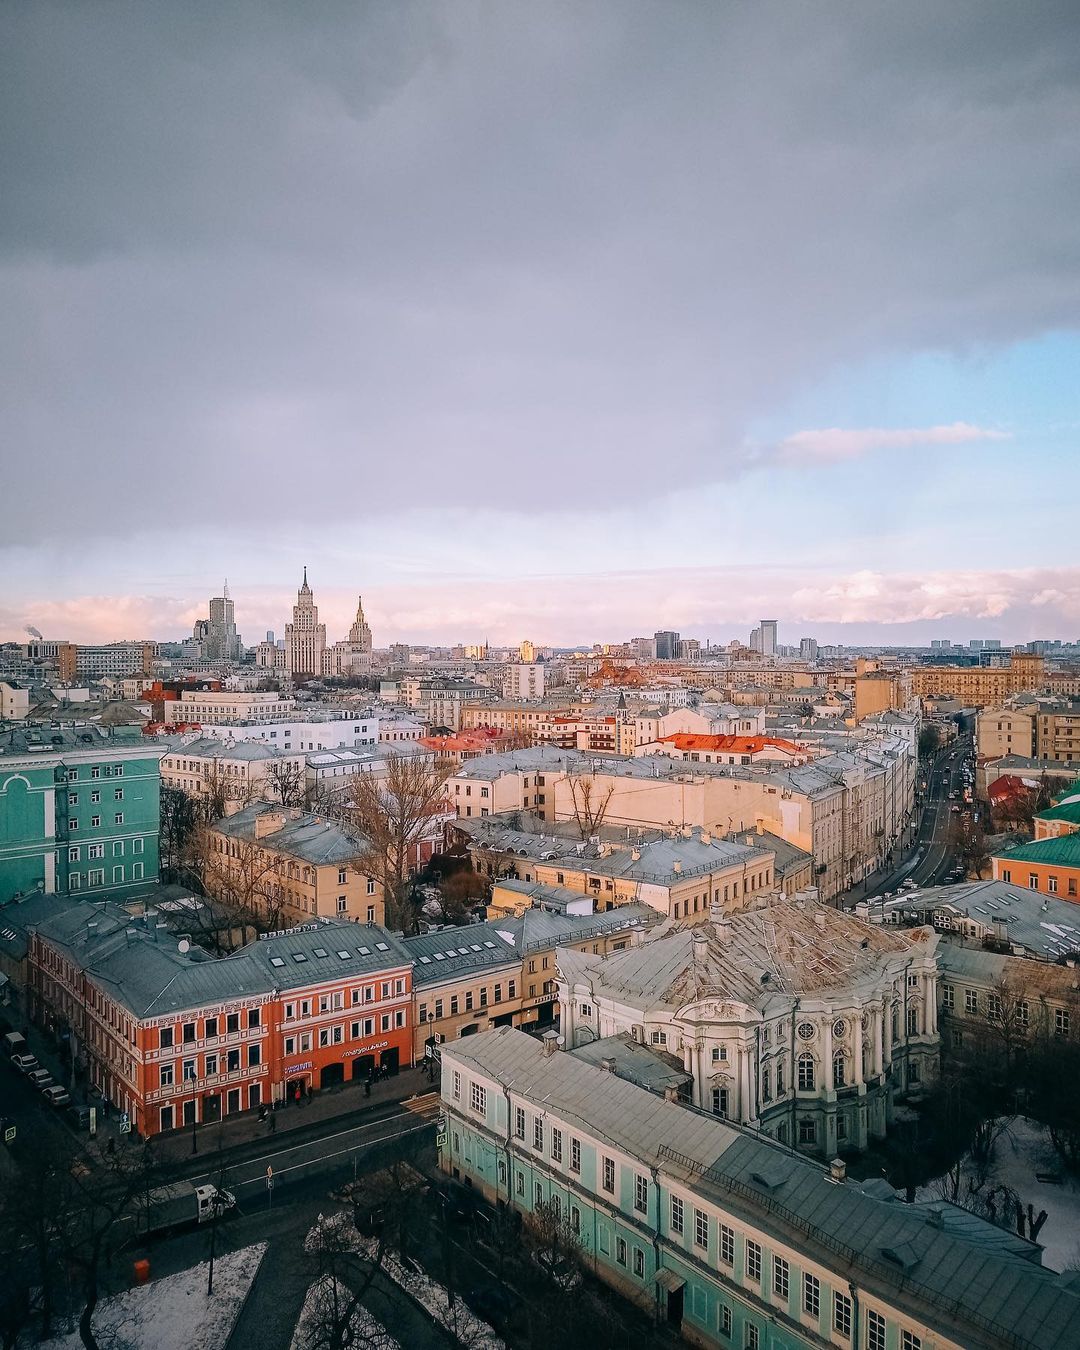 Архитектура и пейзажи Москвы на снимках Ильи Воробьева